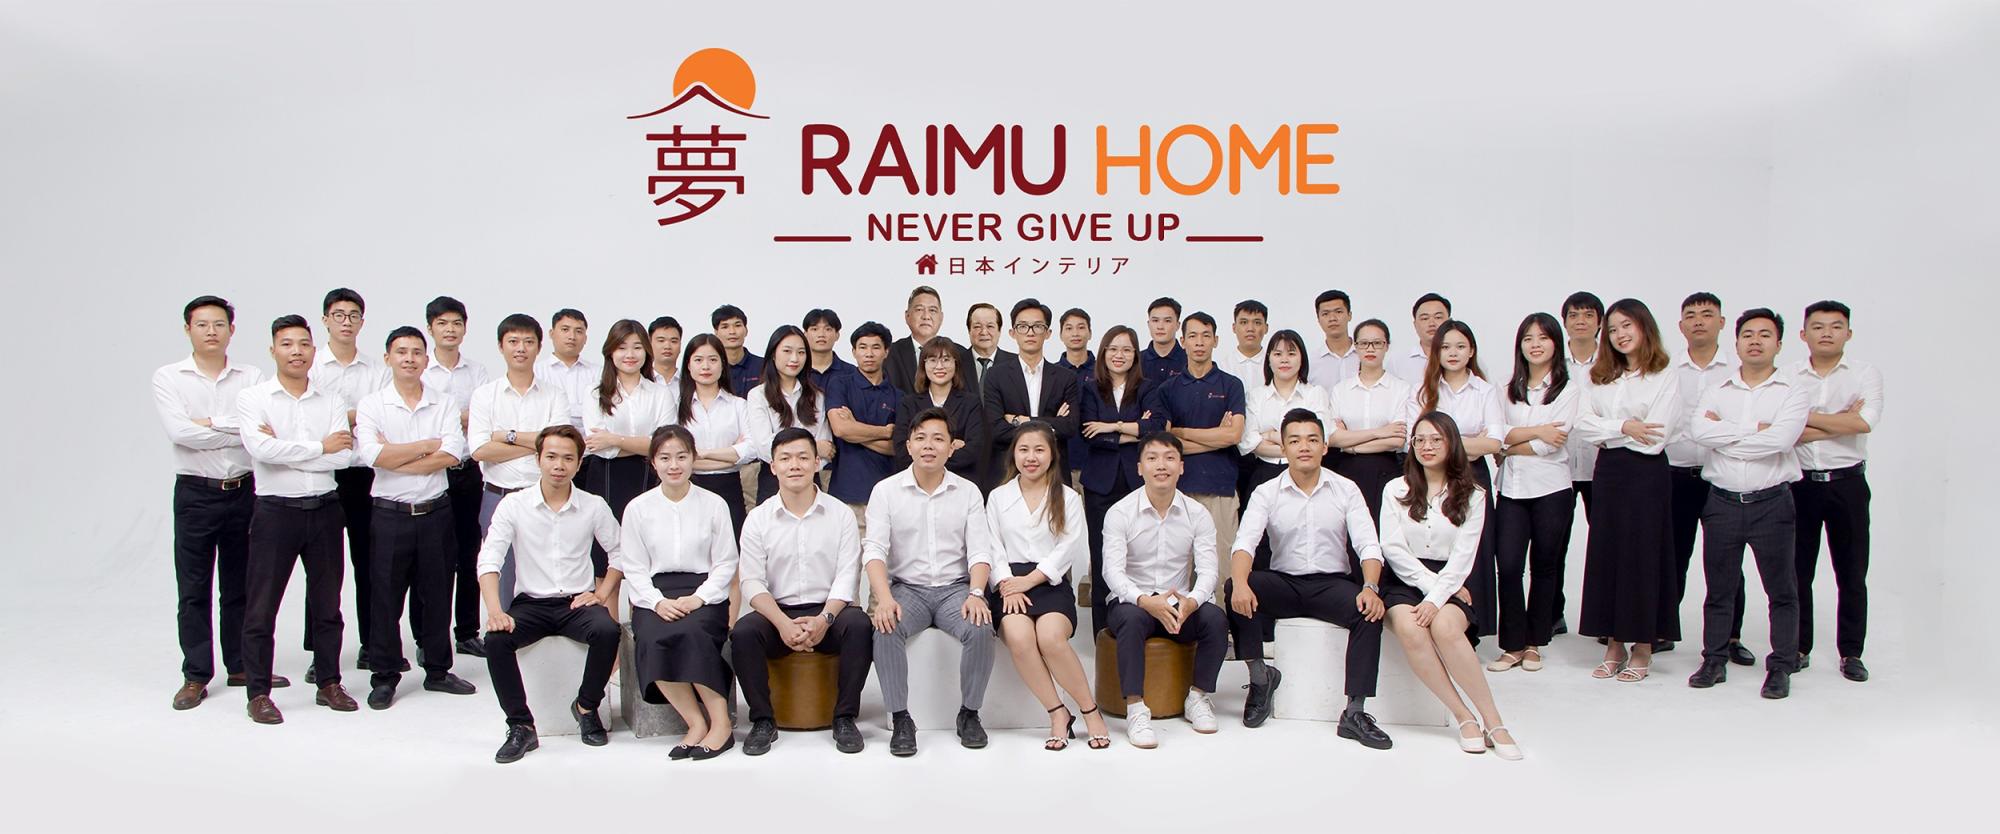 Raimu Home - Mang chất lượng Nhật Bản cho ngôi nhà Việt